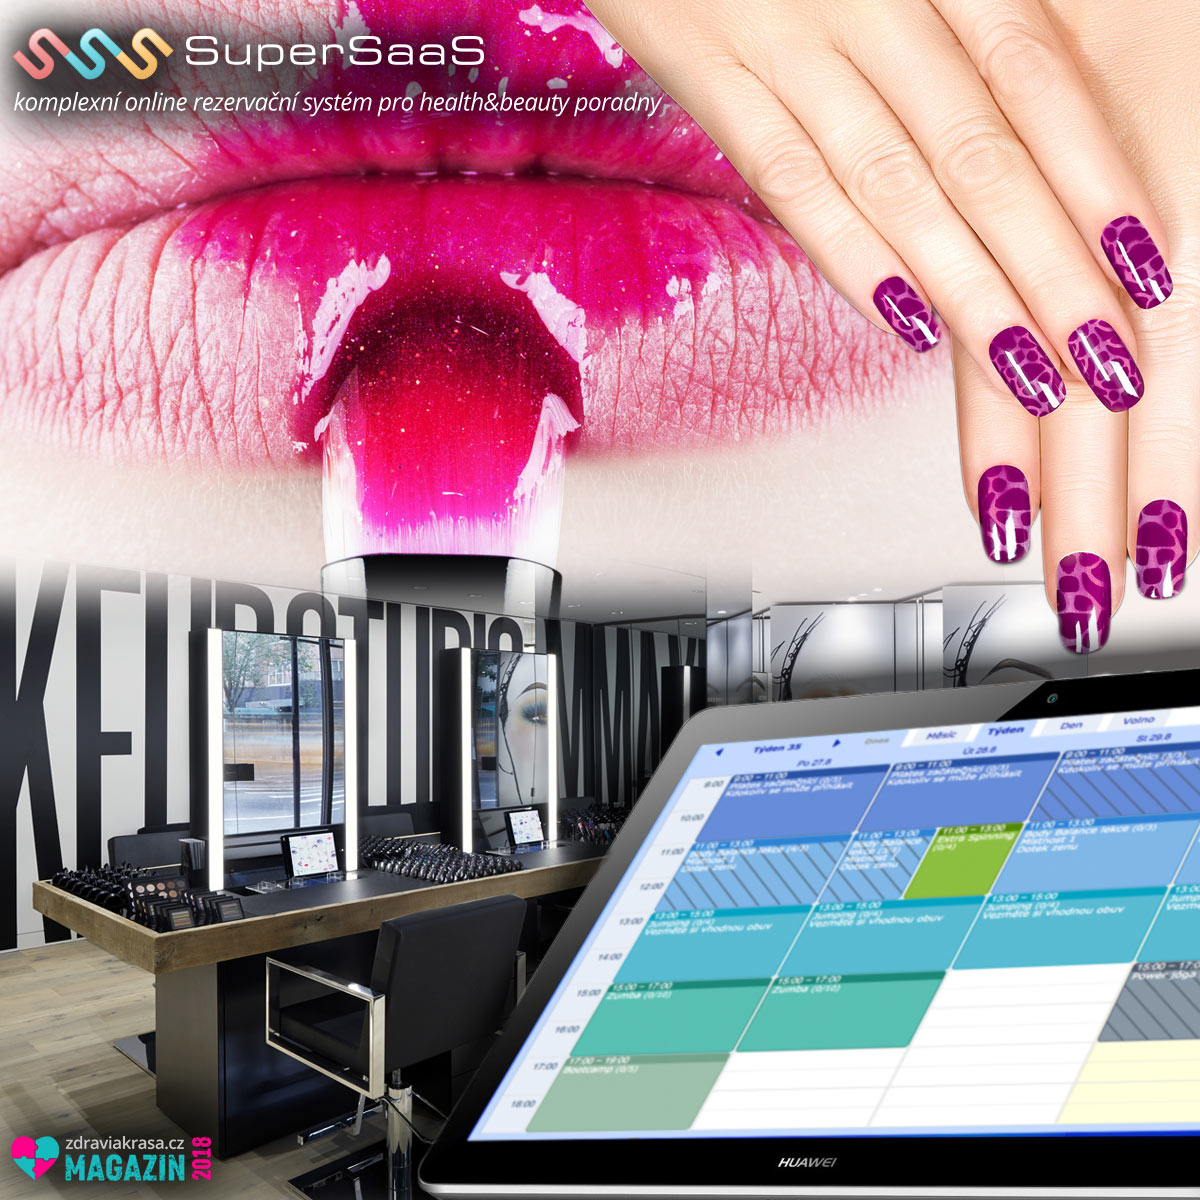 Rezervační systém SuperSaaS udělá konečně pořádek i vašem beauty businessu. 